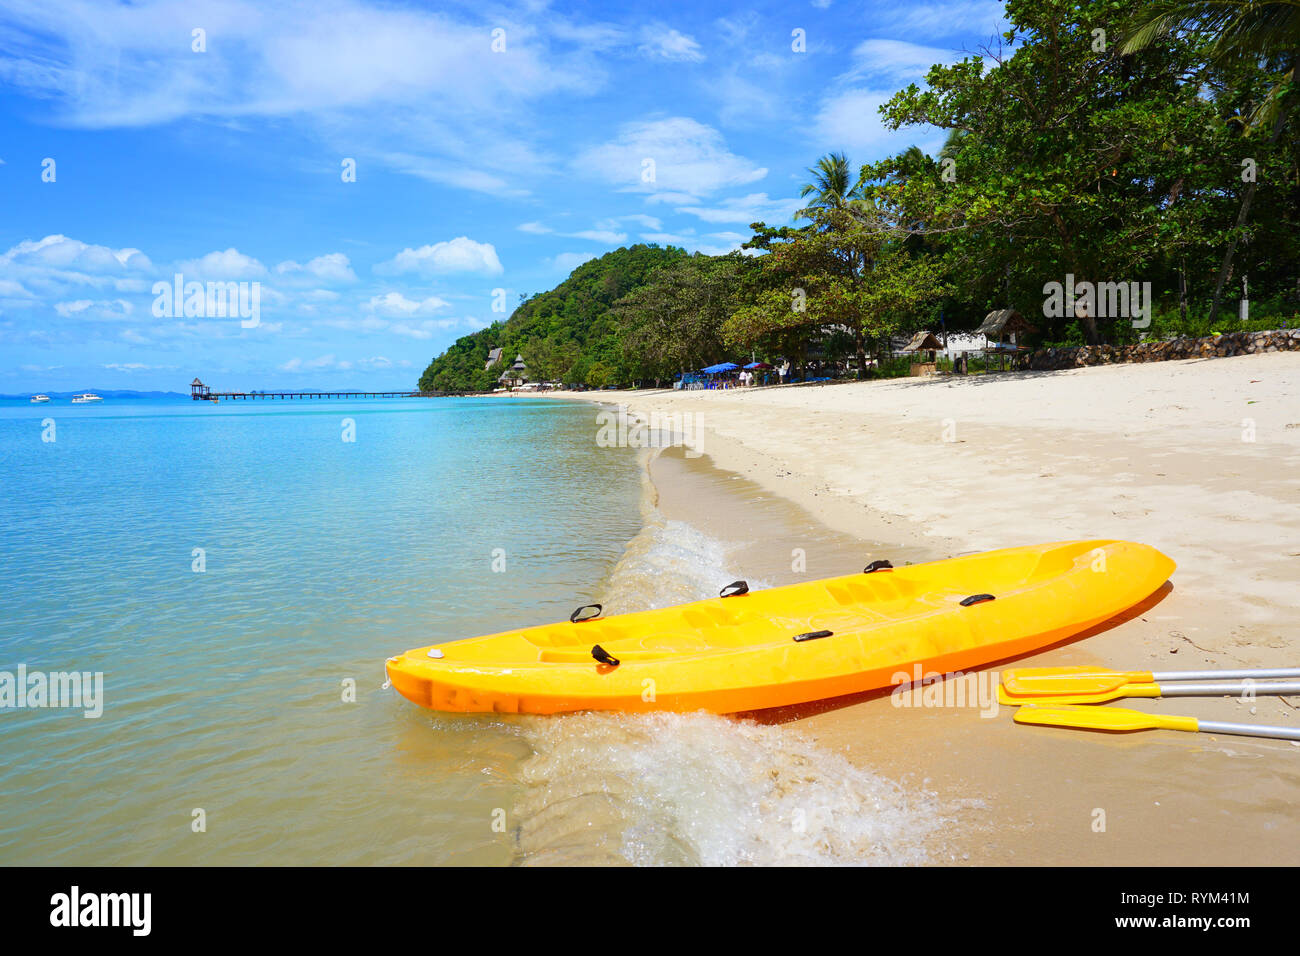 La sua fibra di una barca che uso per trasporto e inoltre è possibile vedere il mare, colline in background e il suo una cattura immagini a isola di phuket, Foto Stock